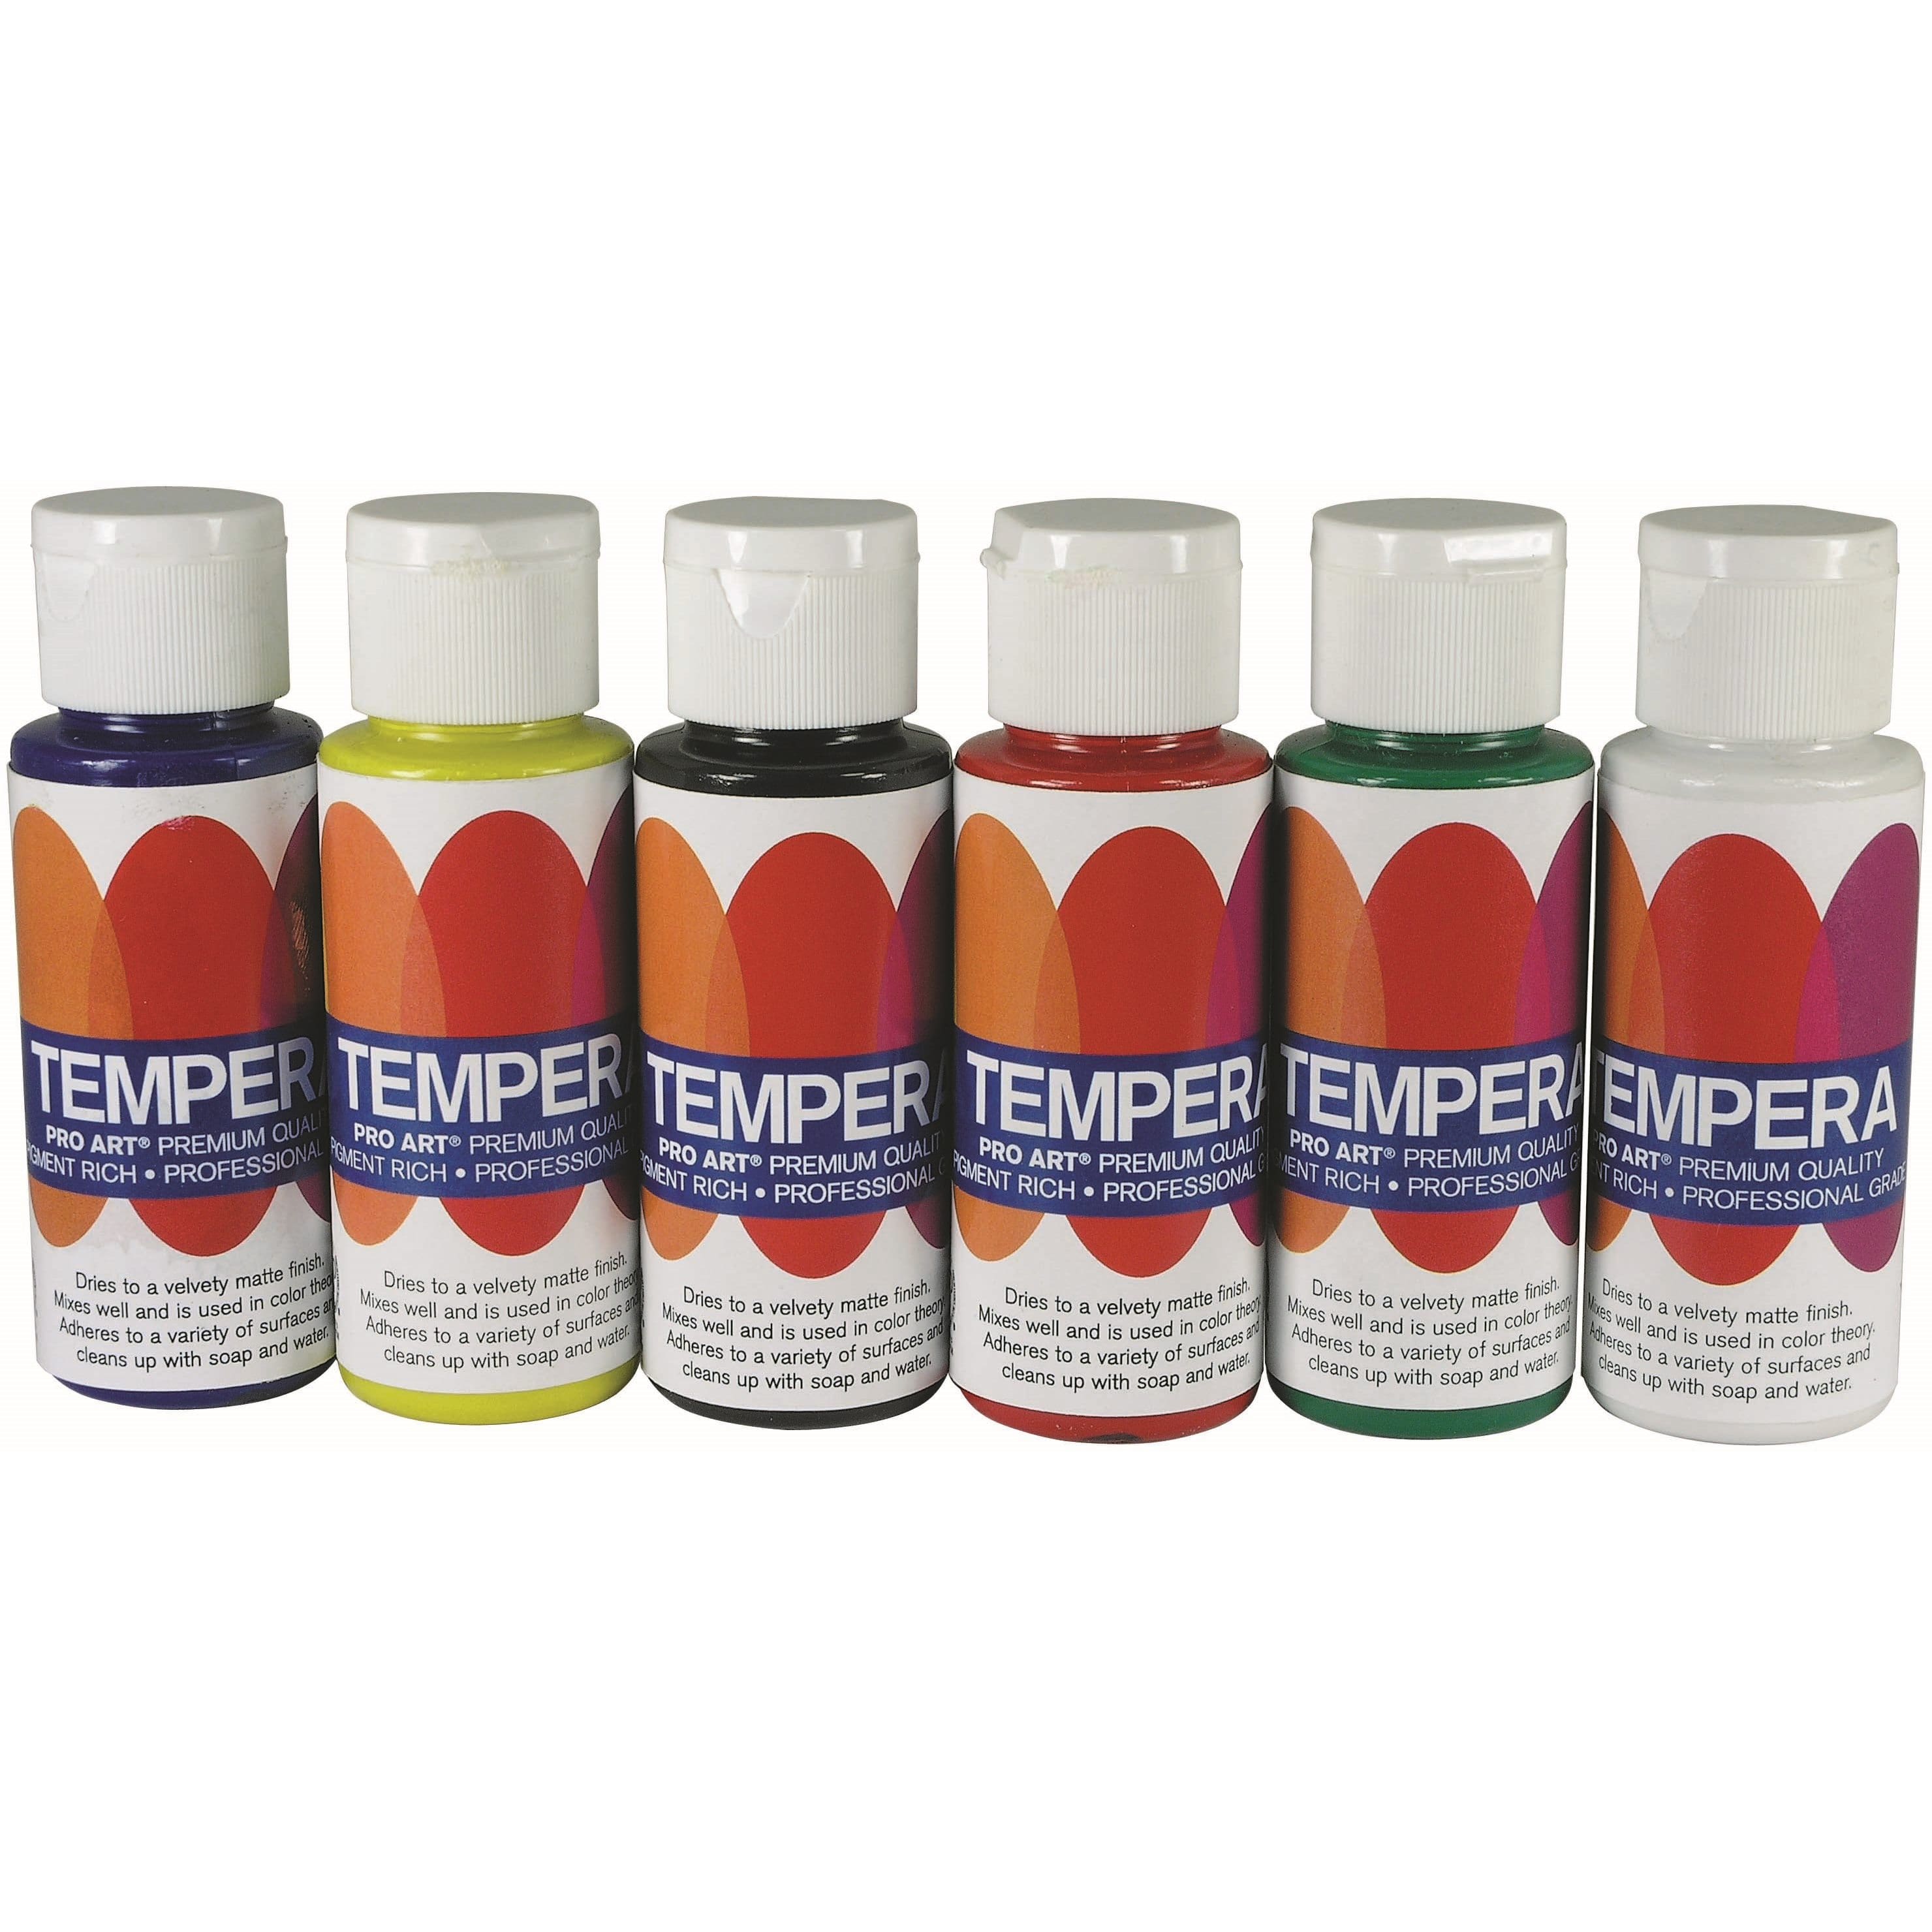 Pro Art® Pearlescent 6 Color Liquid Tempera Paint Set